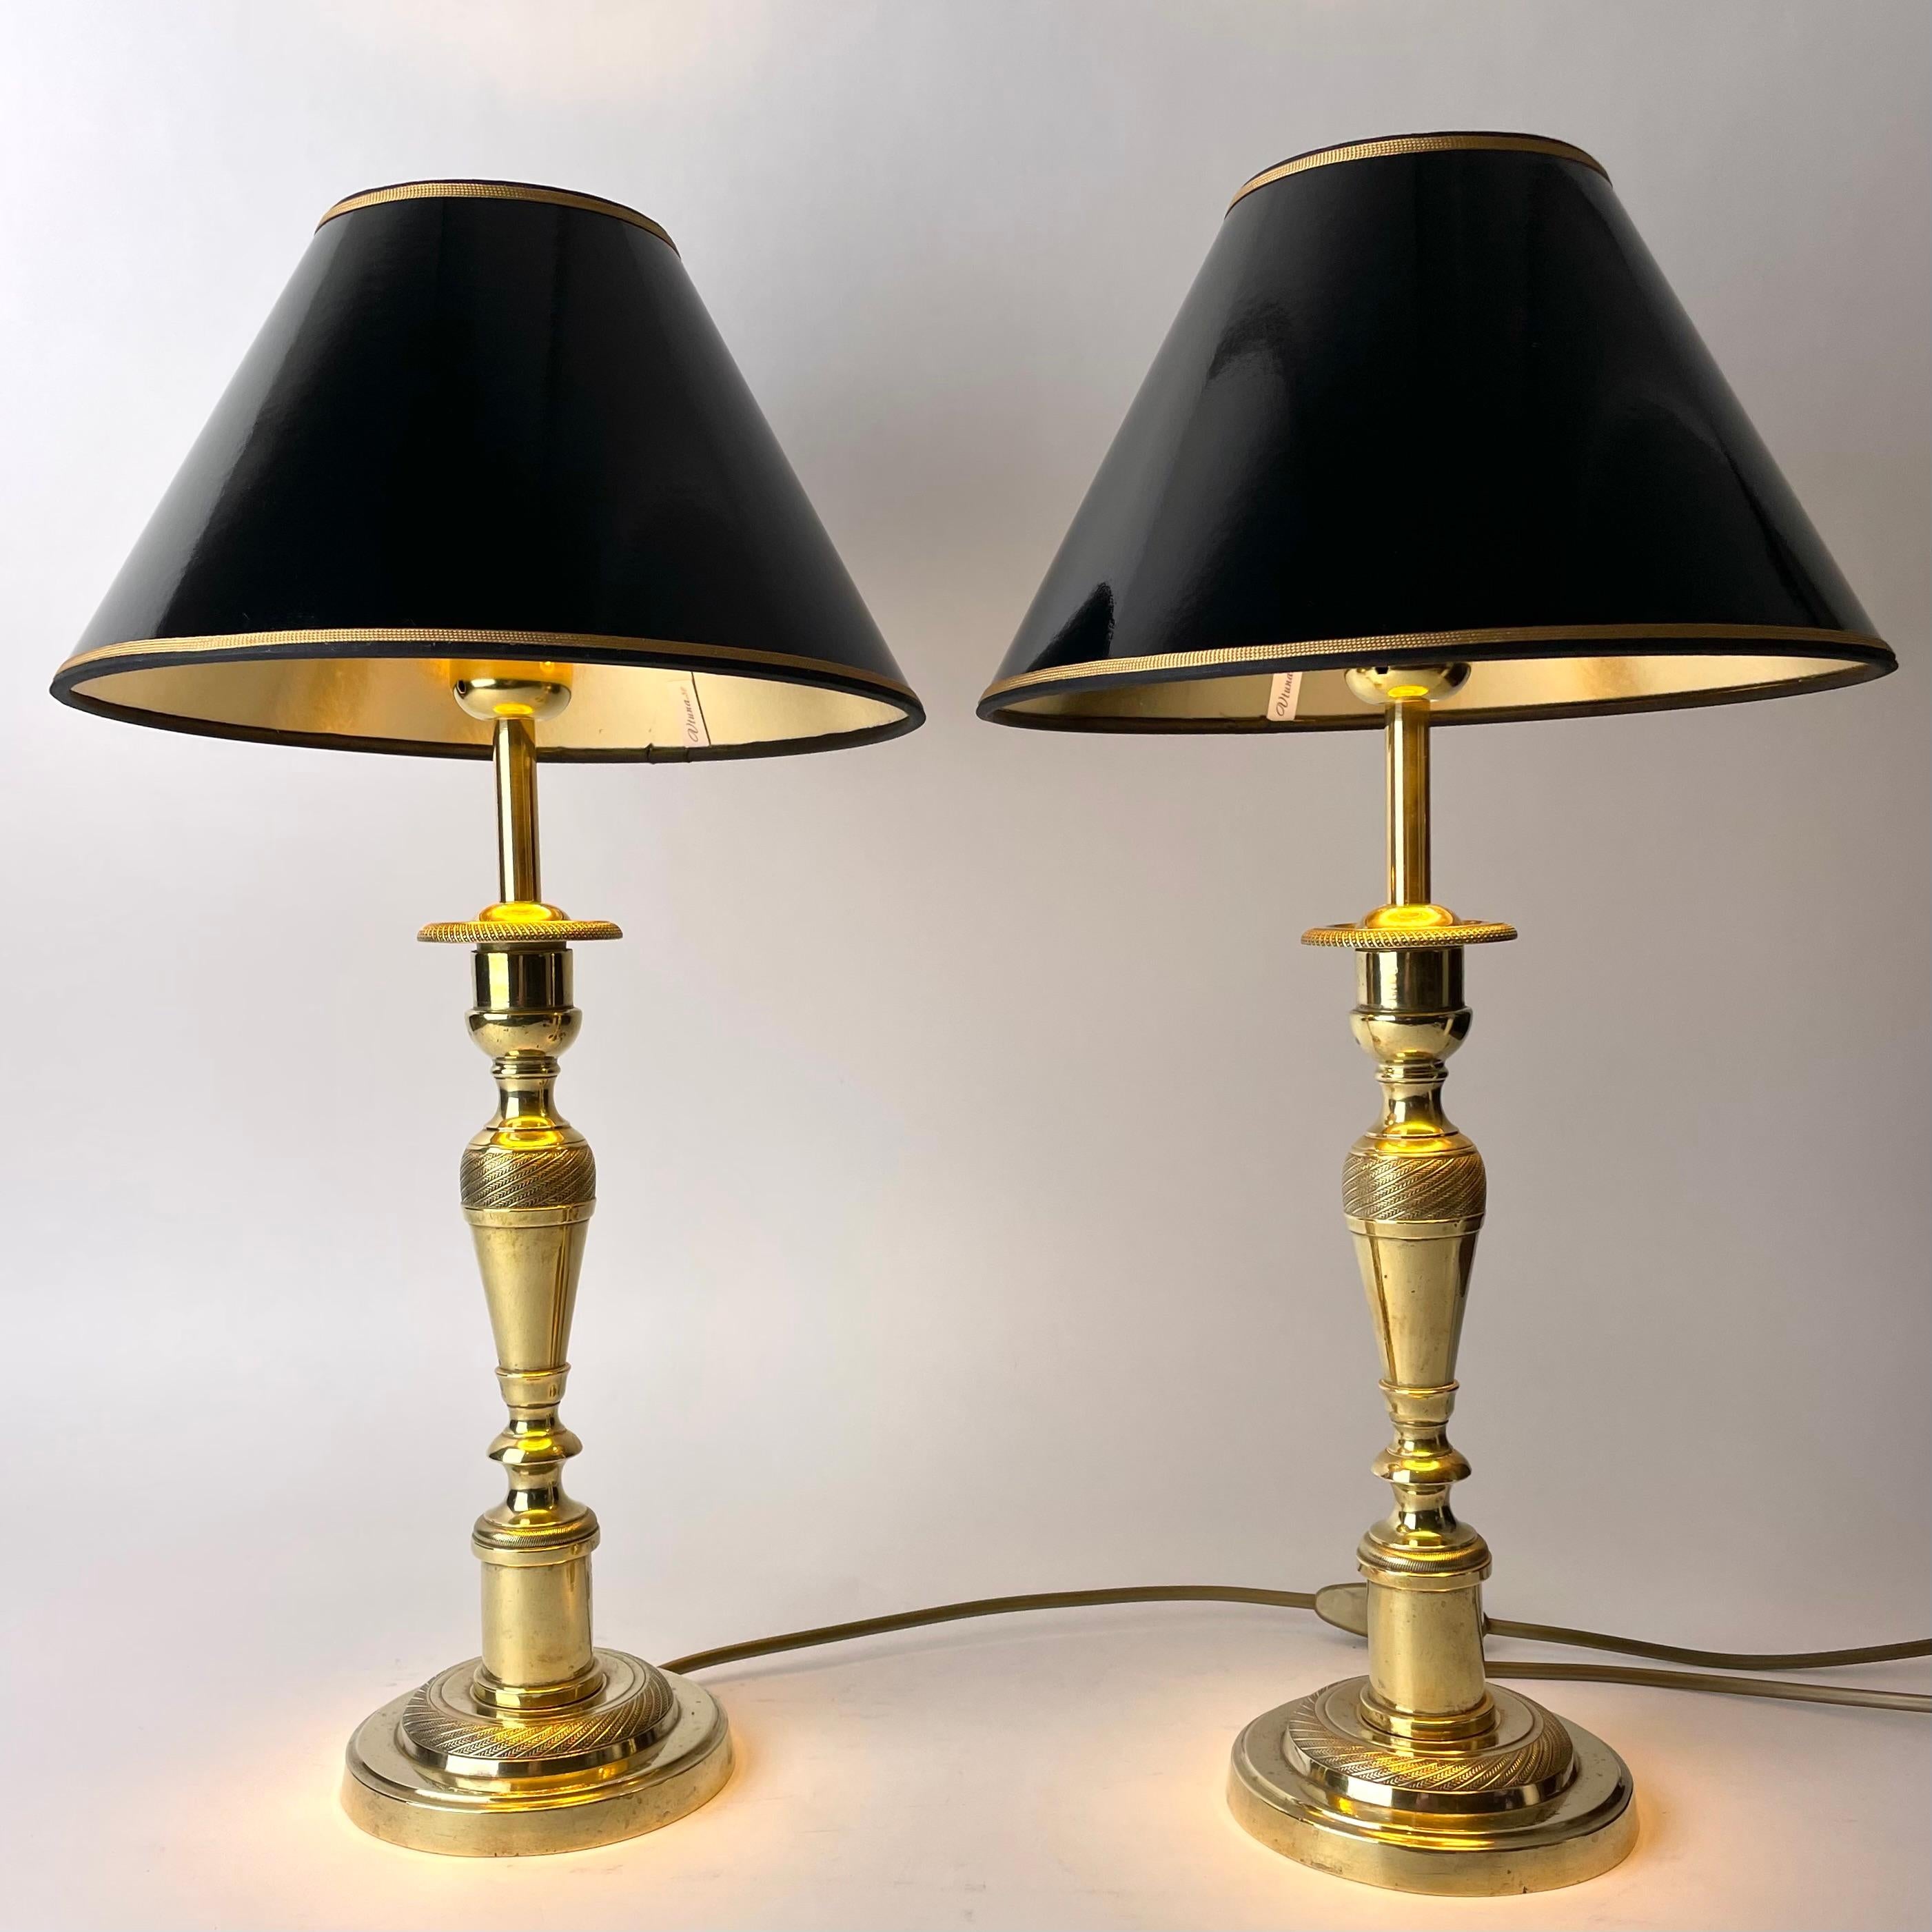 Schönes Paar Empire-Tischlampen aus Messing, ursprünglich Kerzenständer aus den 1820er Jahren, die Anfang des 20. 

Neu verkabelte Elektrizität.

Neue Lampenschirme aus schwarzem Lack mit Vergoldung auf der Innenseite, die ein gemütliches Licht